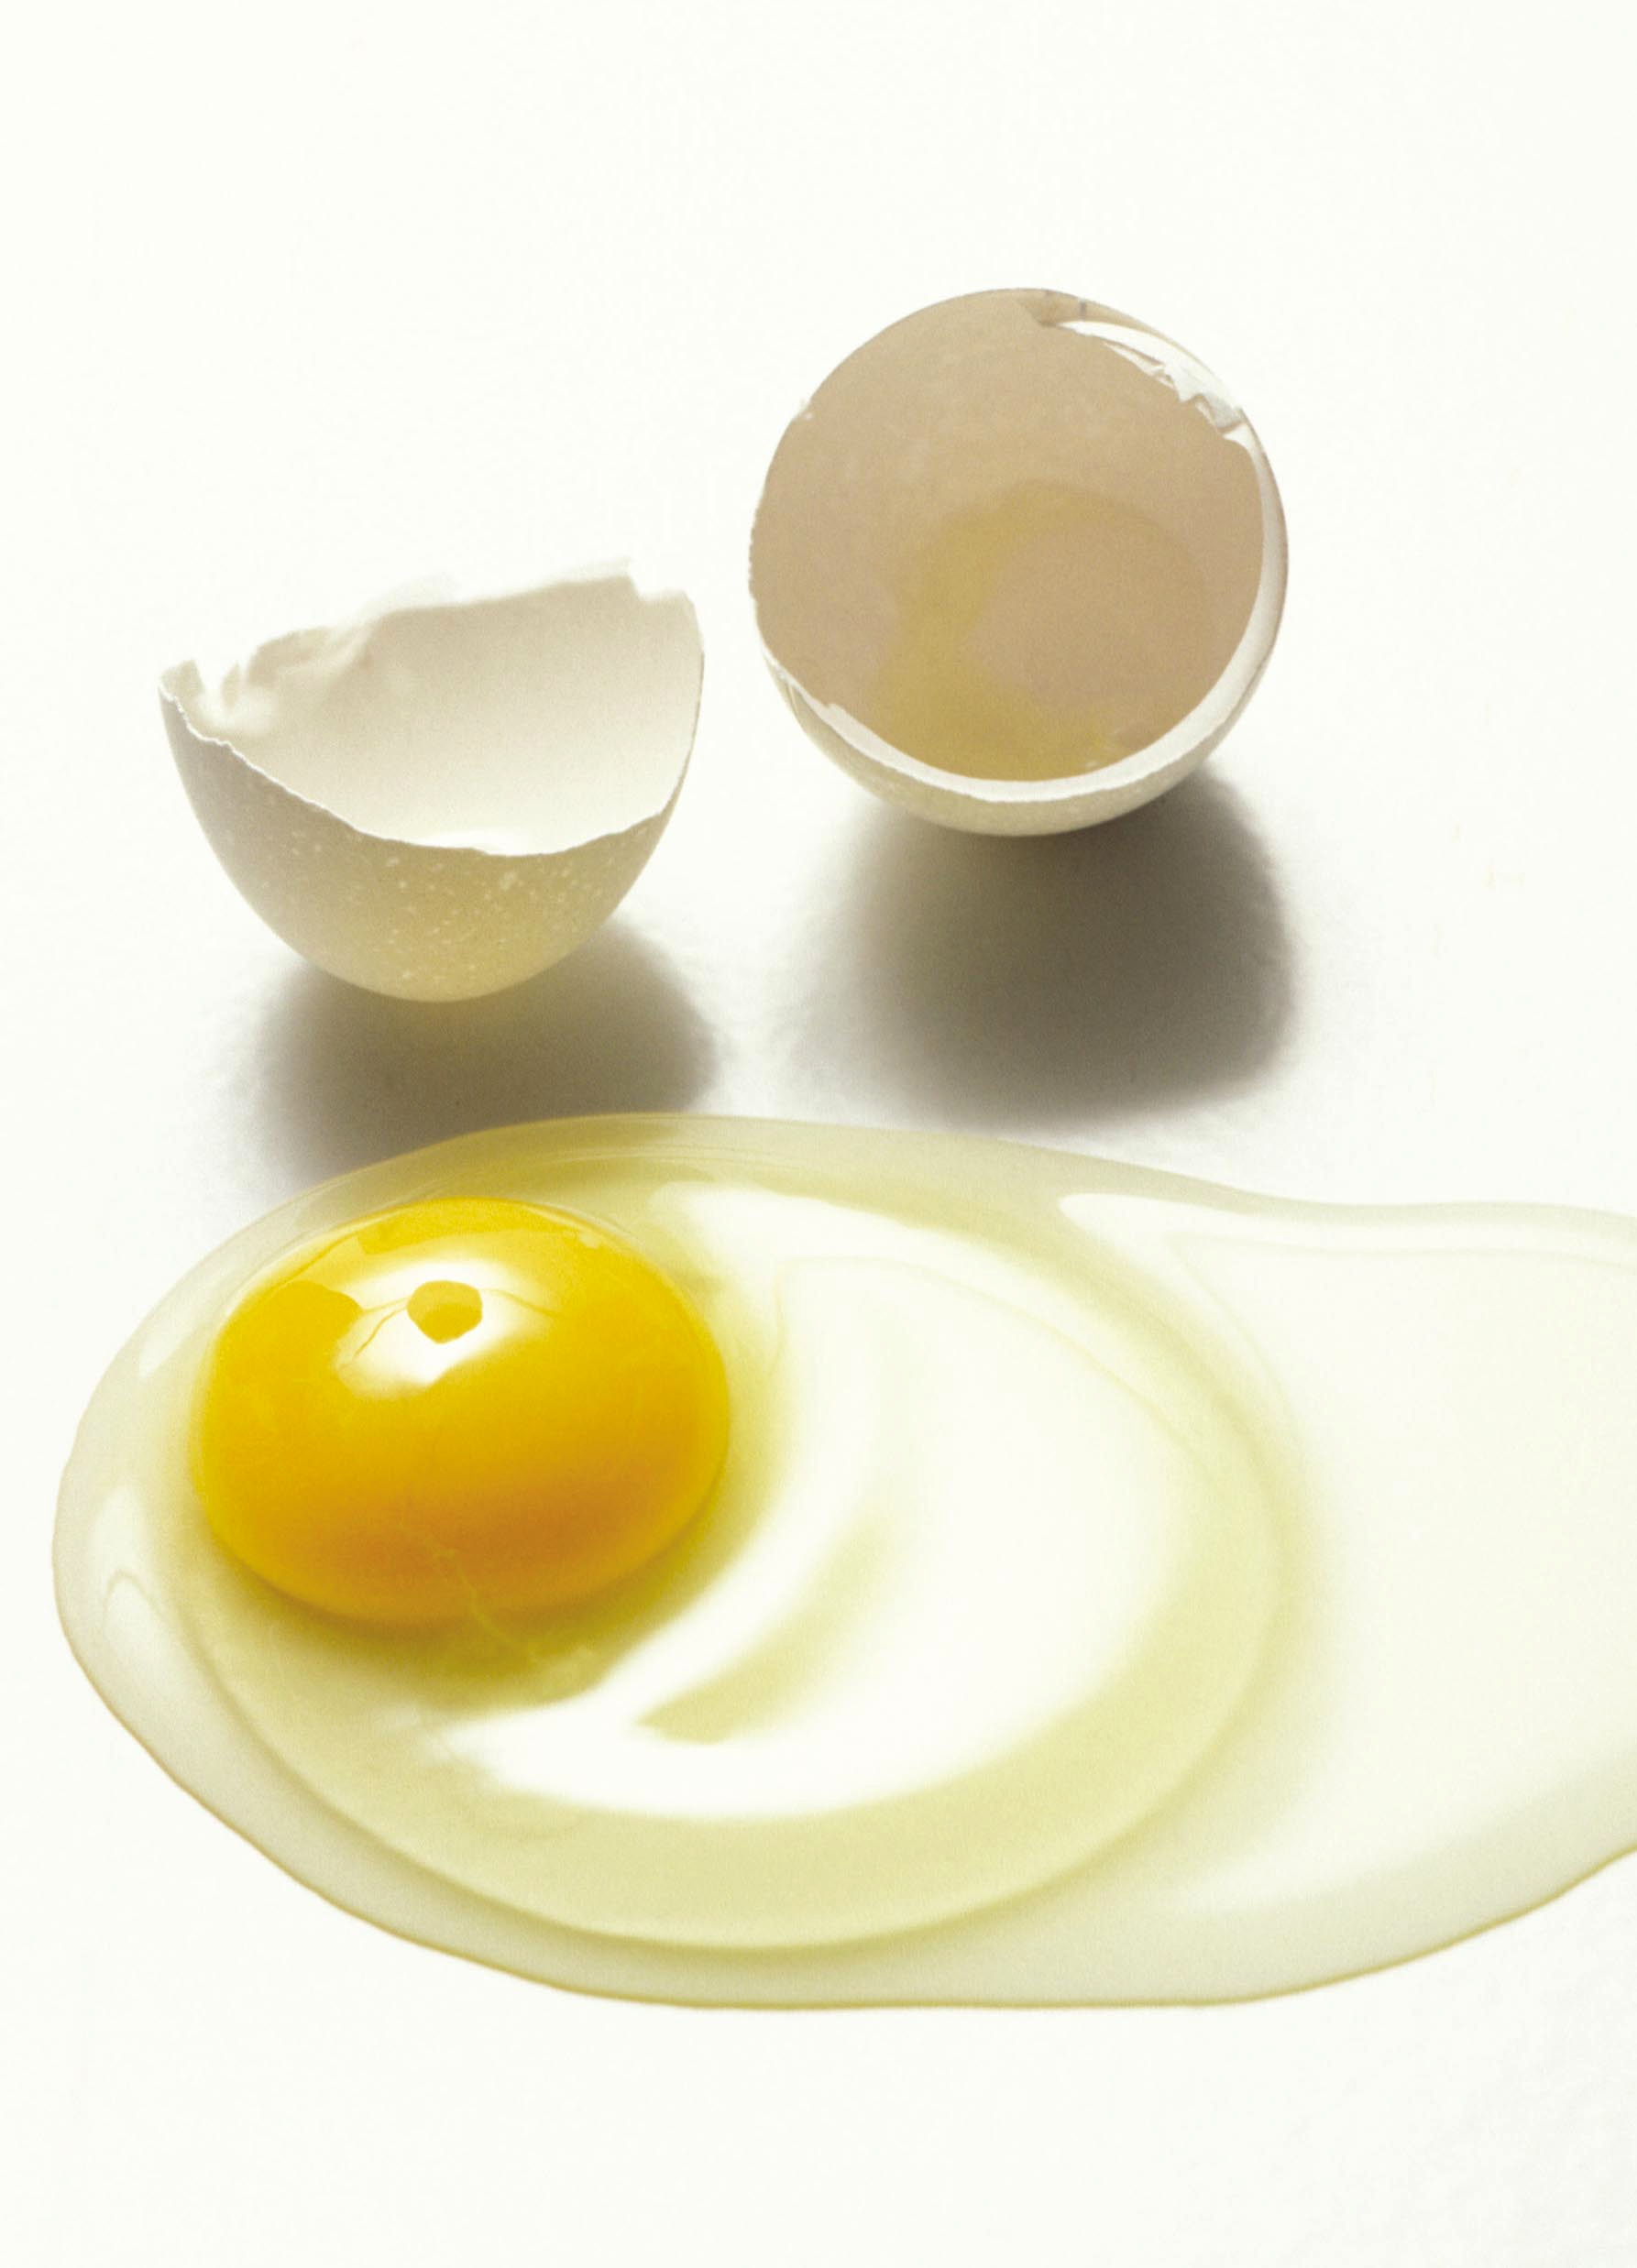 Come acquistare, conservare e riconoscere un uovo fresco Per essere sicuri di consumare uova fresche e garantite e di conservarle al meglio, basta seguire alcune semplici regole: 1.